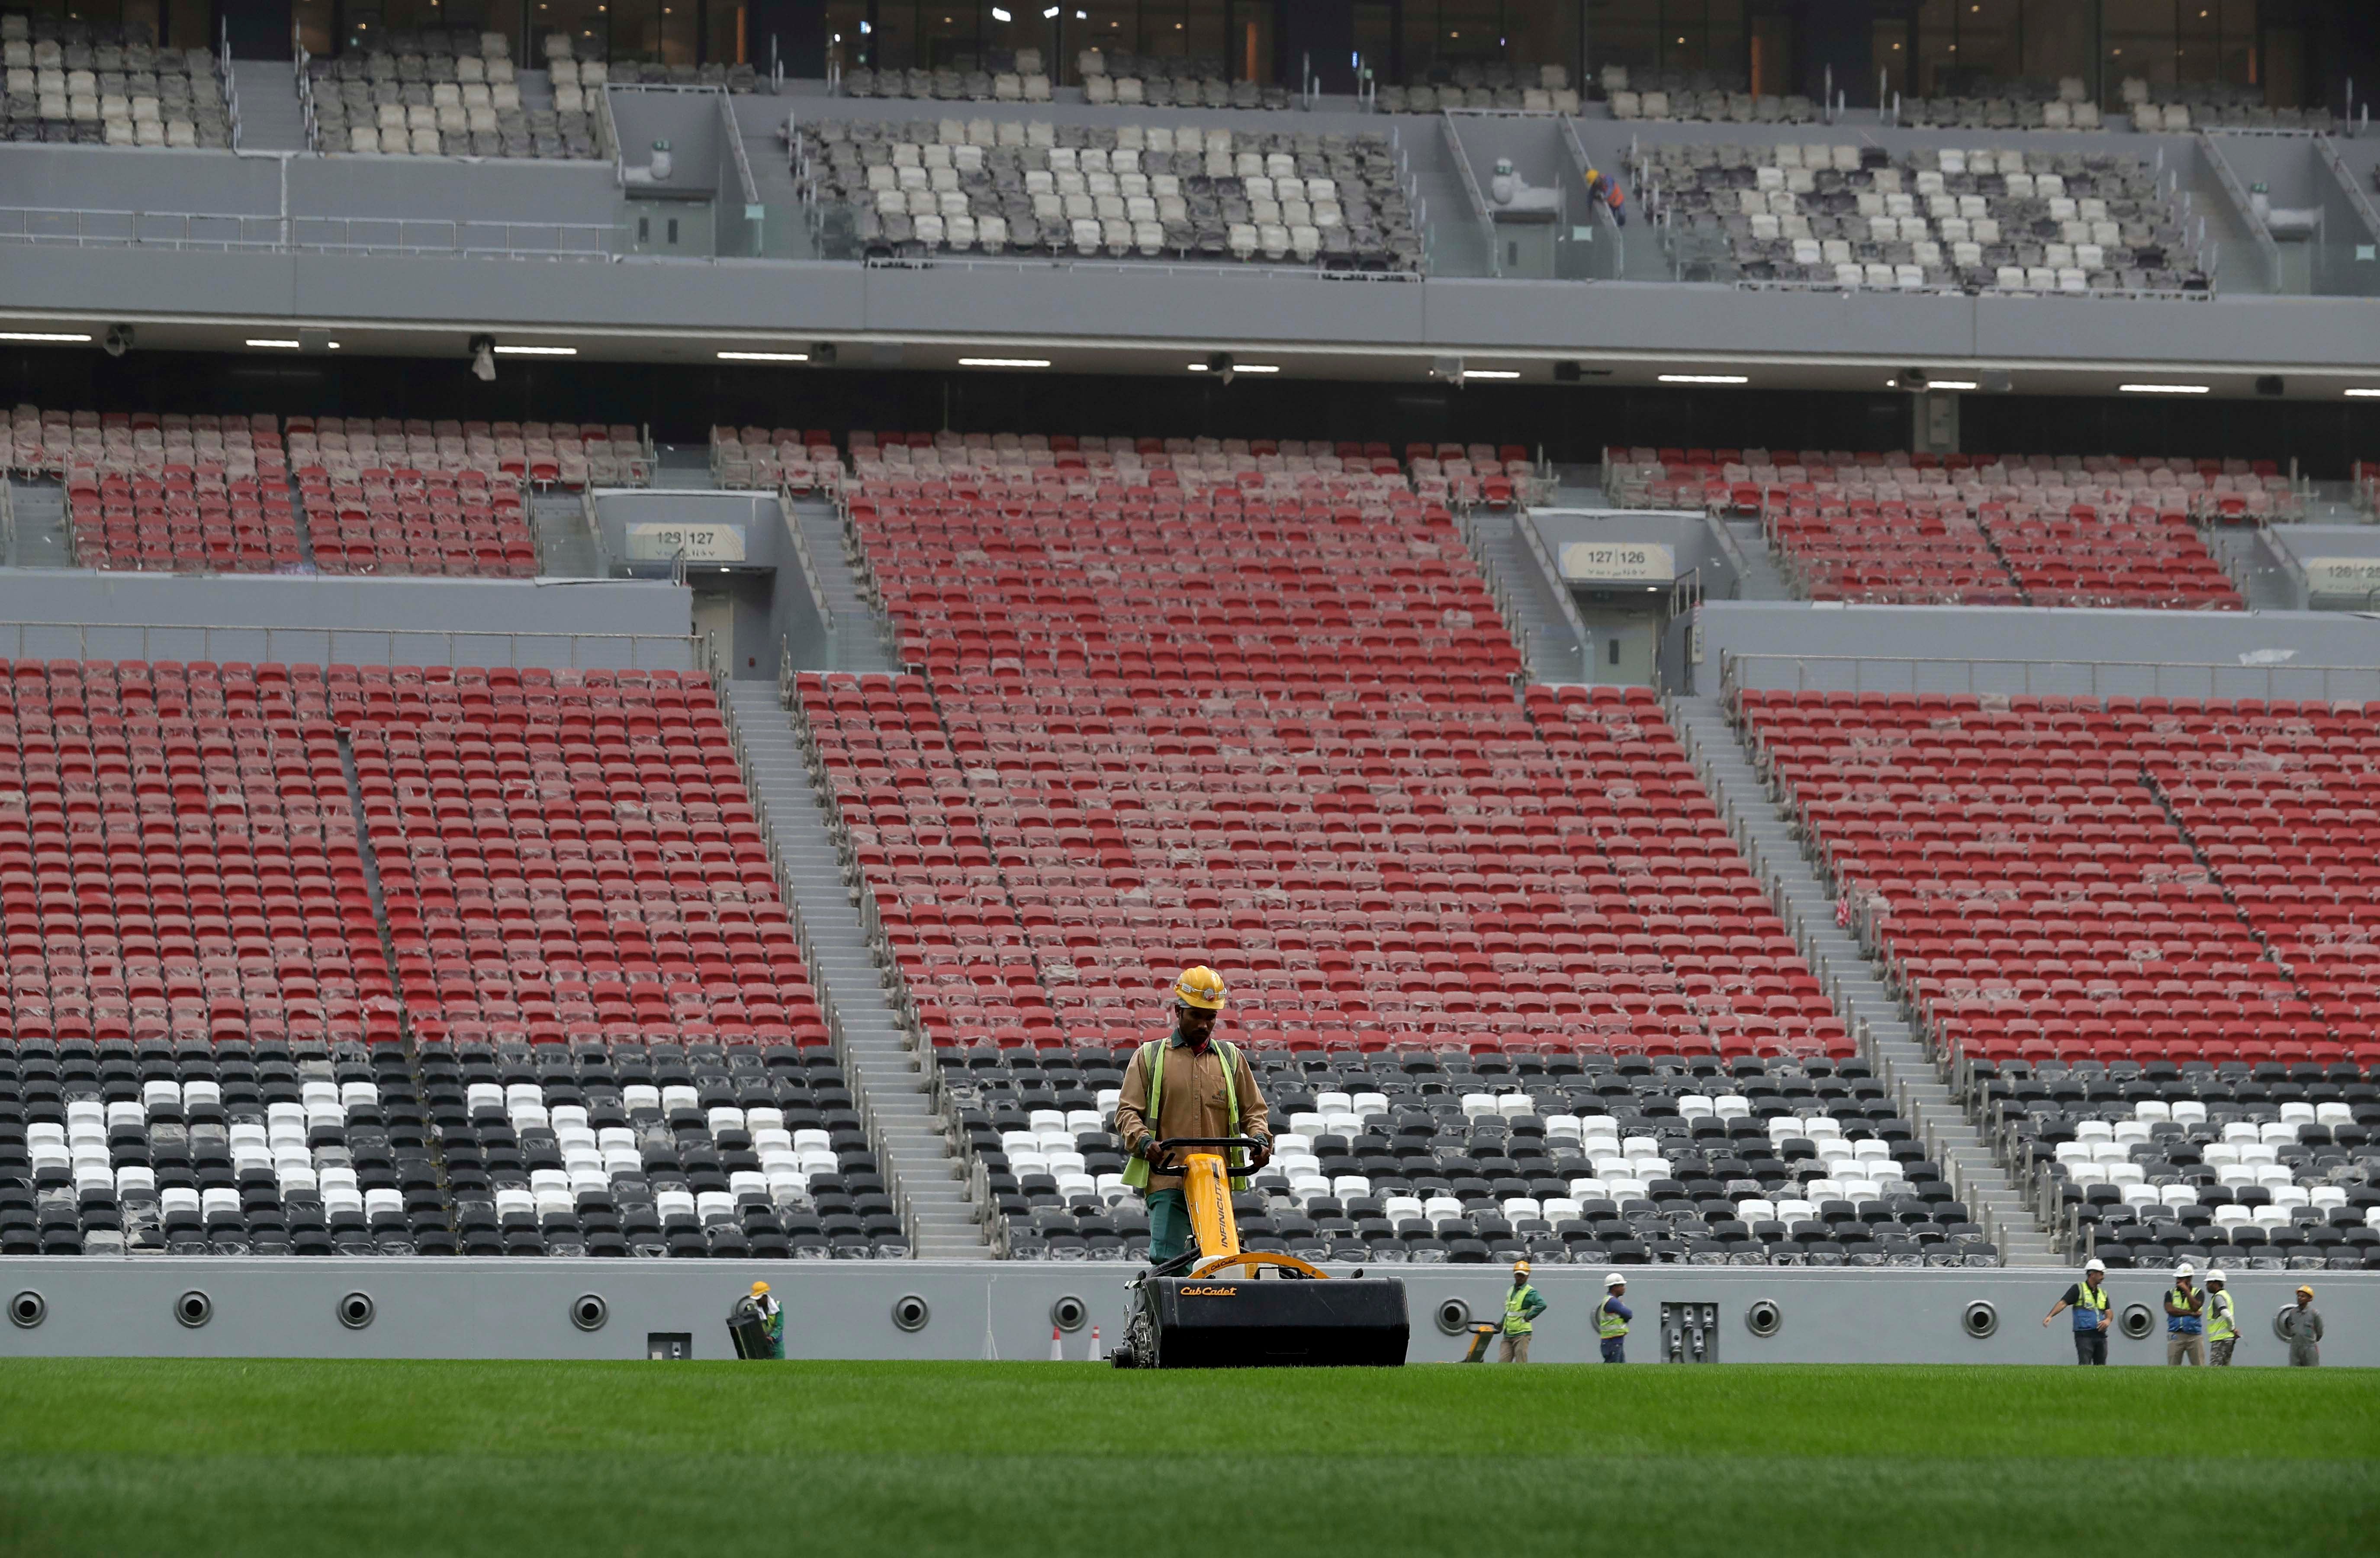 عمال في استاد البيت، أحد ملاعب كأس العالم 2022، في الخور، على بعد حوالي 50 كيلومتر شمال الدوحة، قطر، 17 ديسمبر/كانون الأول 2019. 